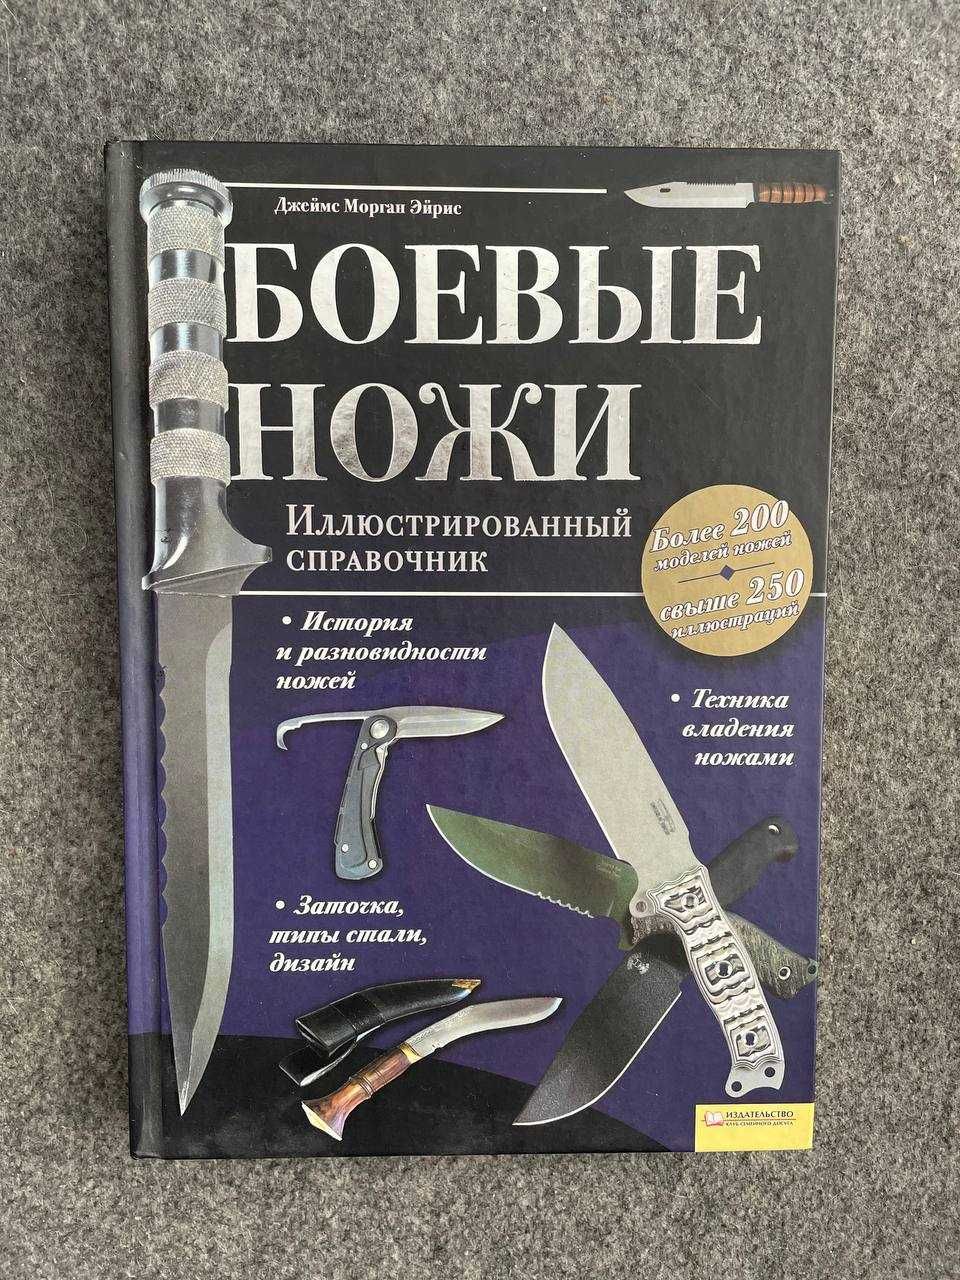 Боевые ножи. Иллюстрированный справочник